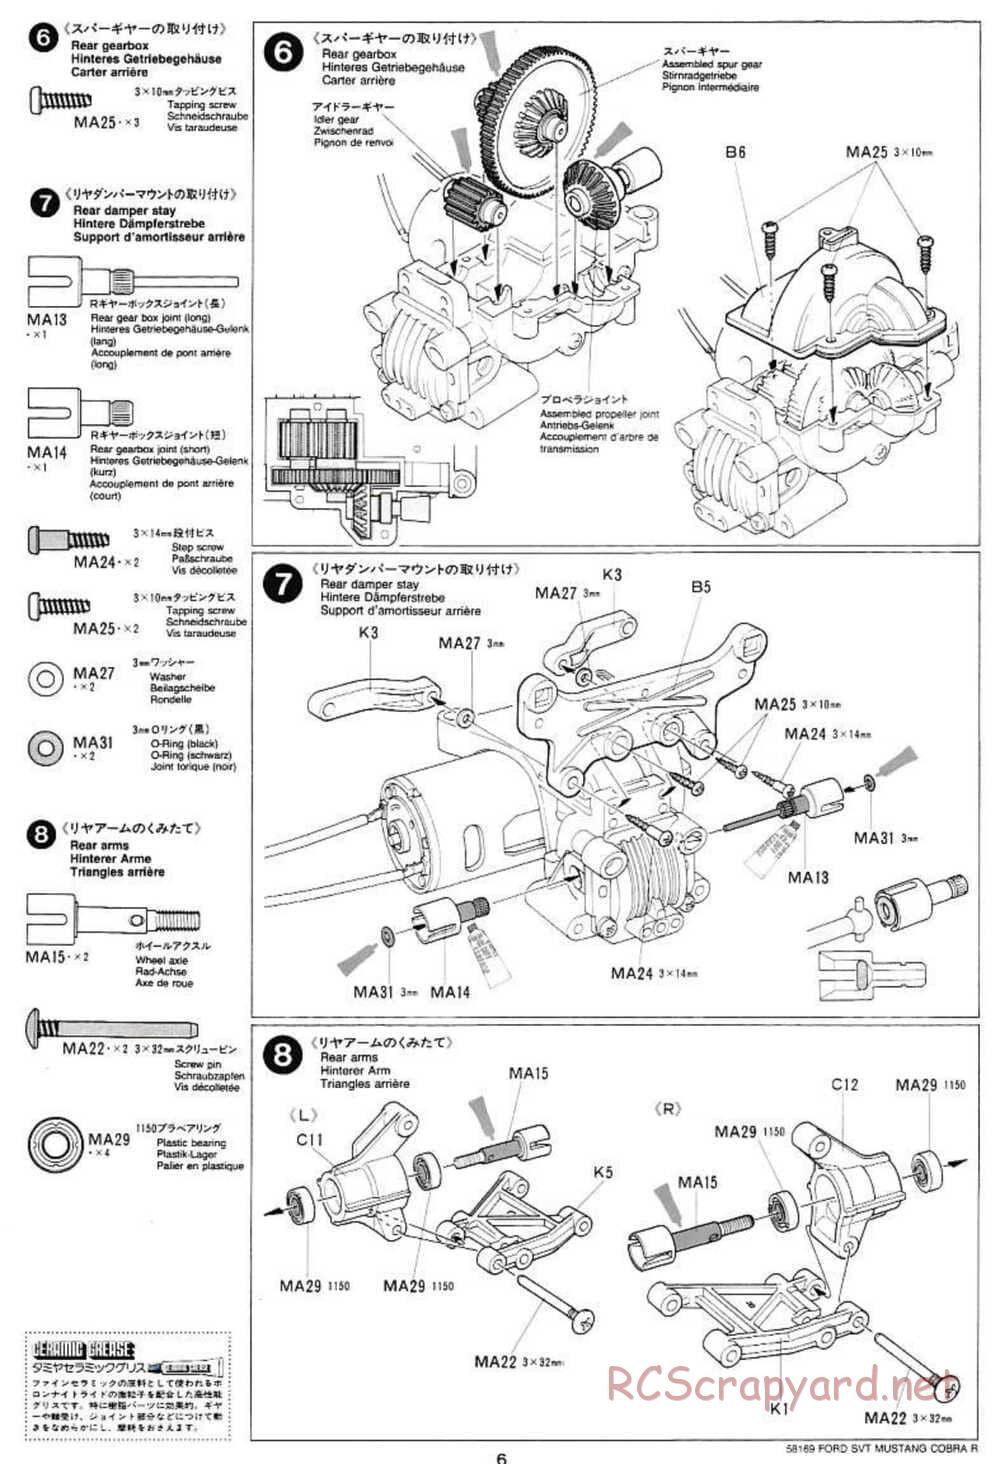 Tamiya - Ford SVT Mustang Cobra-R - TA-02 Chassis - Manual - Page 6